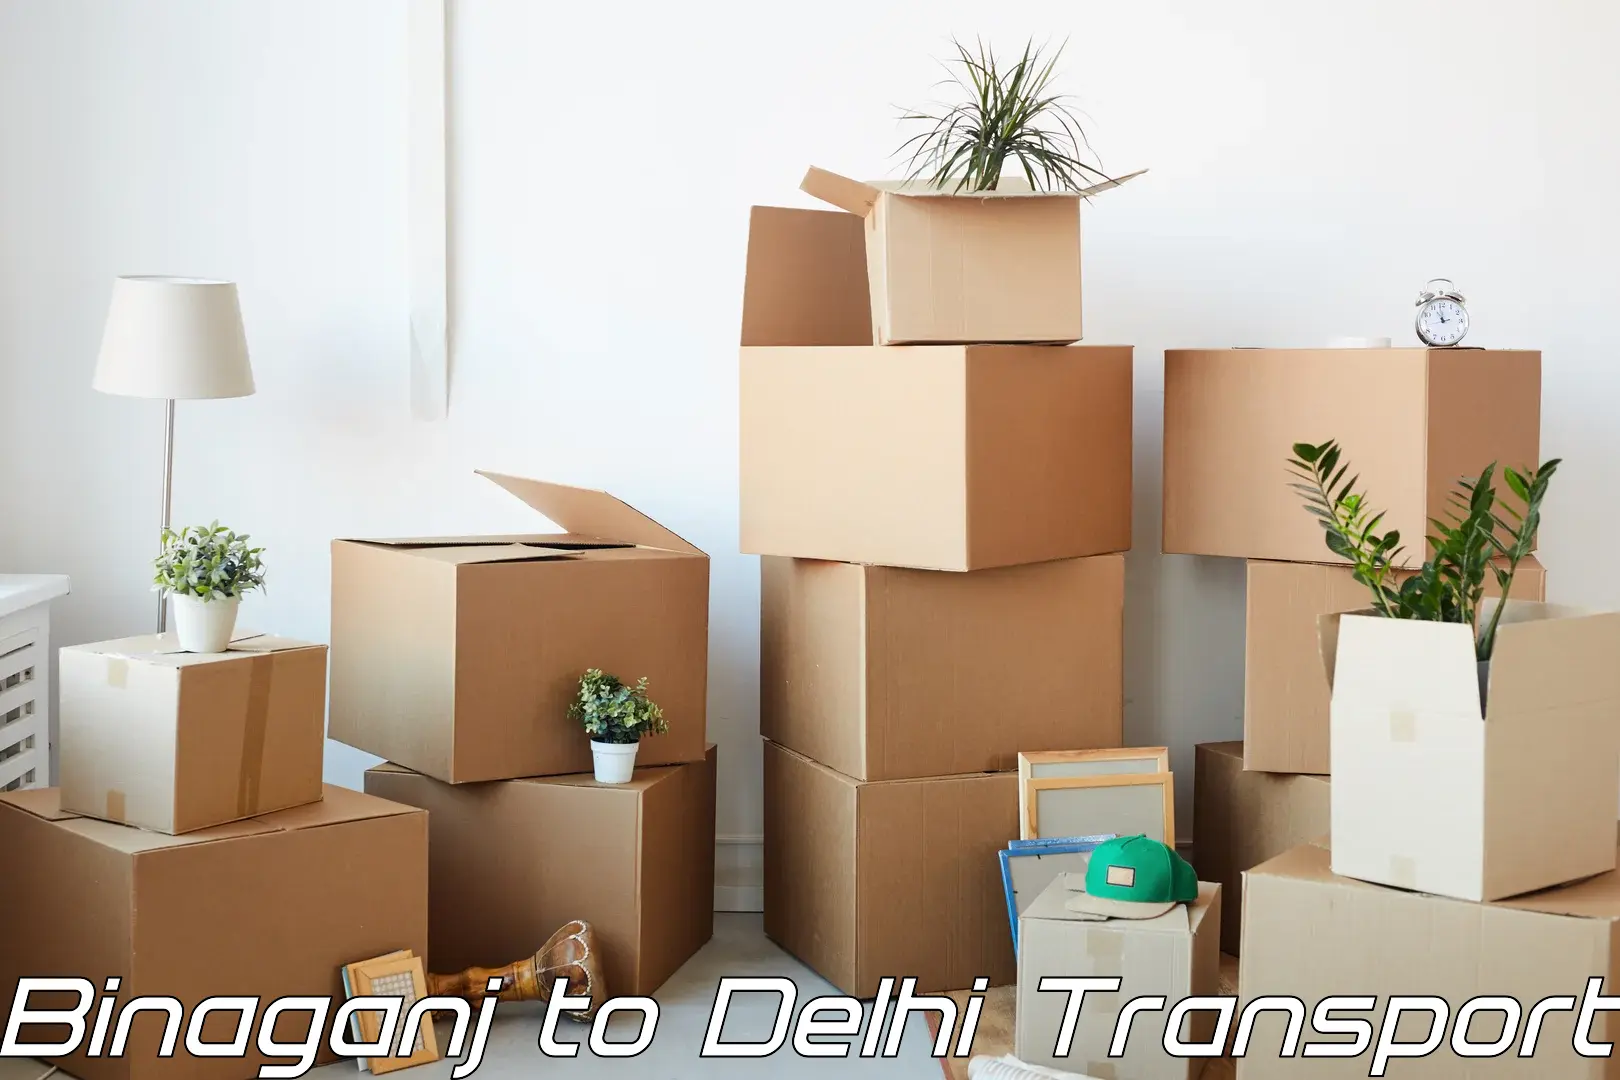 Vehicle courier services Binaganj to Jamia Millia Islamia New Delhi